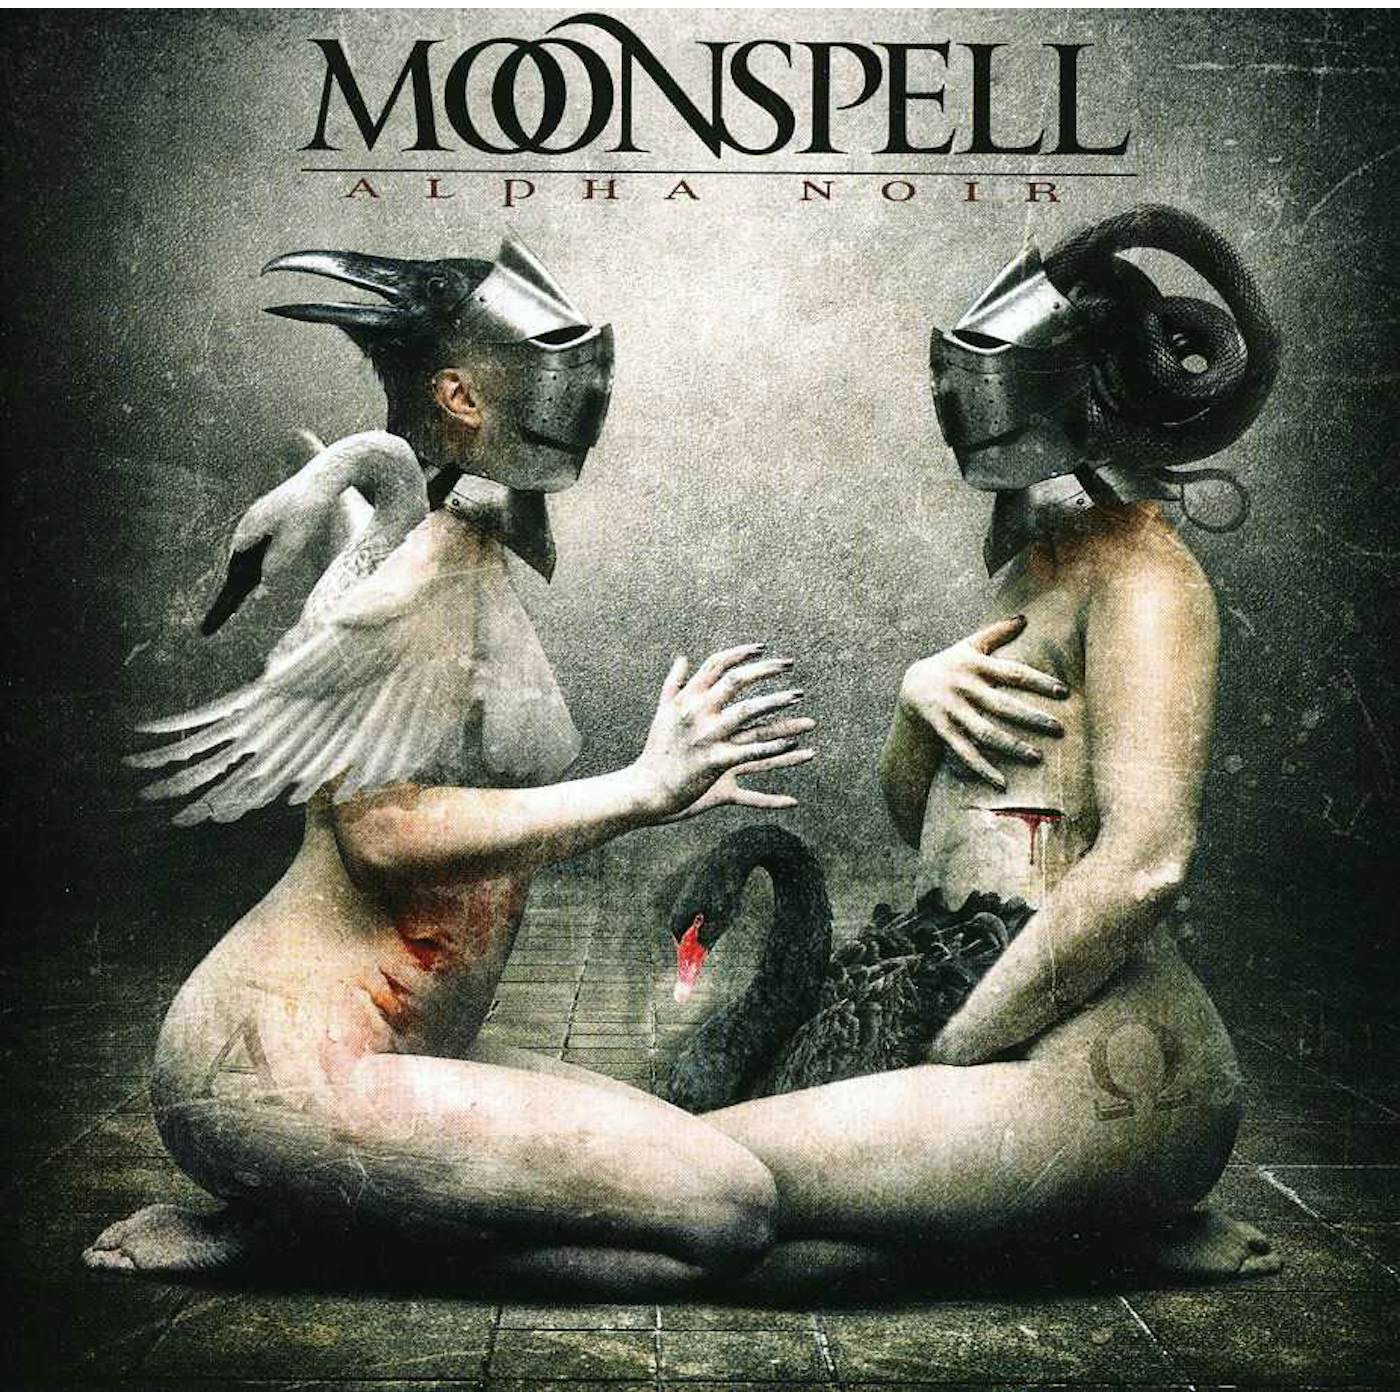 Moonspell ALPHA NOIR CD